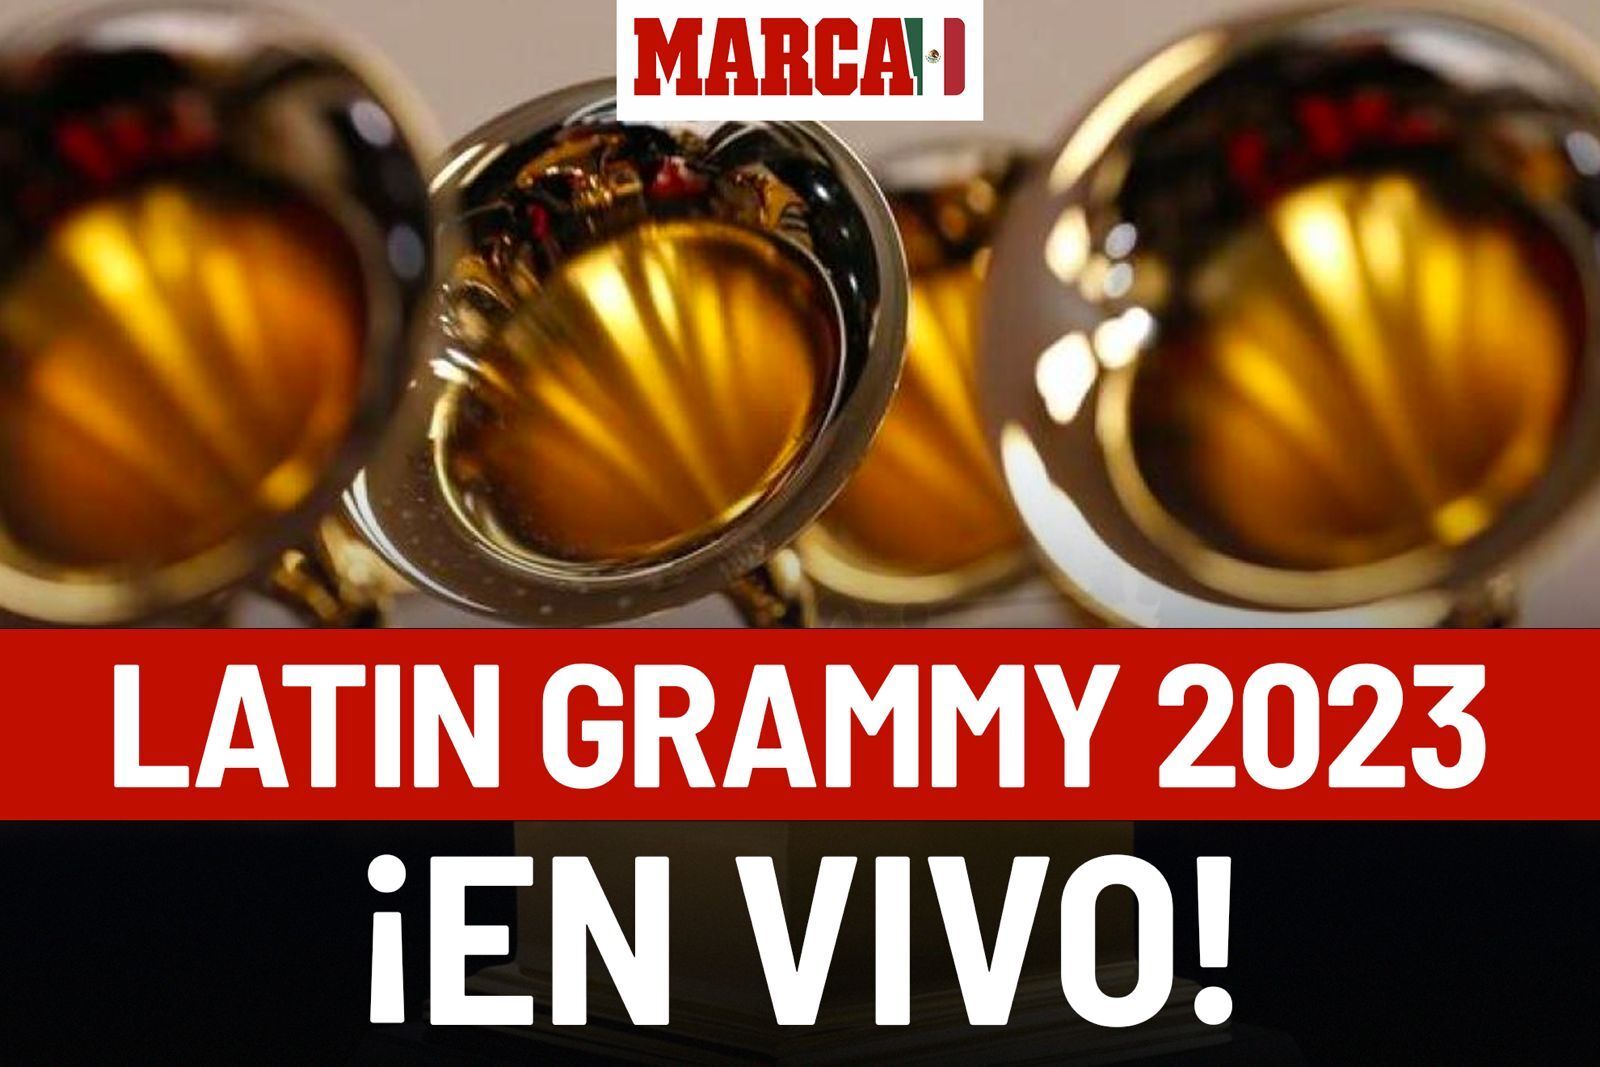 Ver Latin Grammys 2023 EN VIVO Online. El premio al "Álbum del Año" es para la bichota Karol G